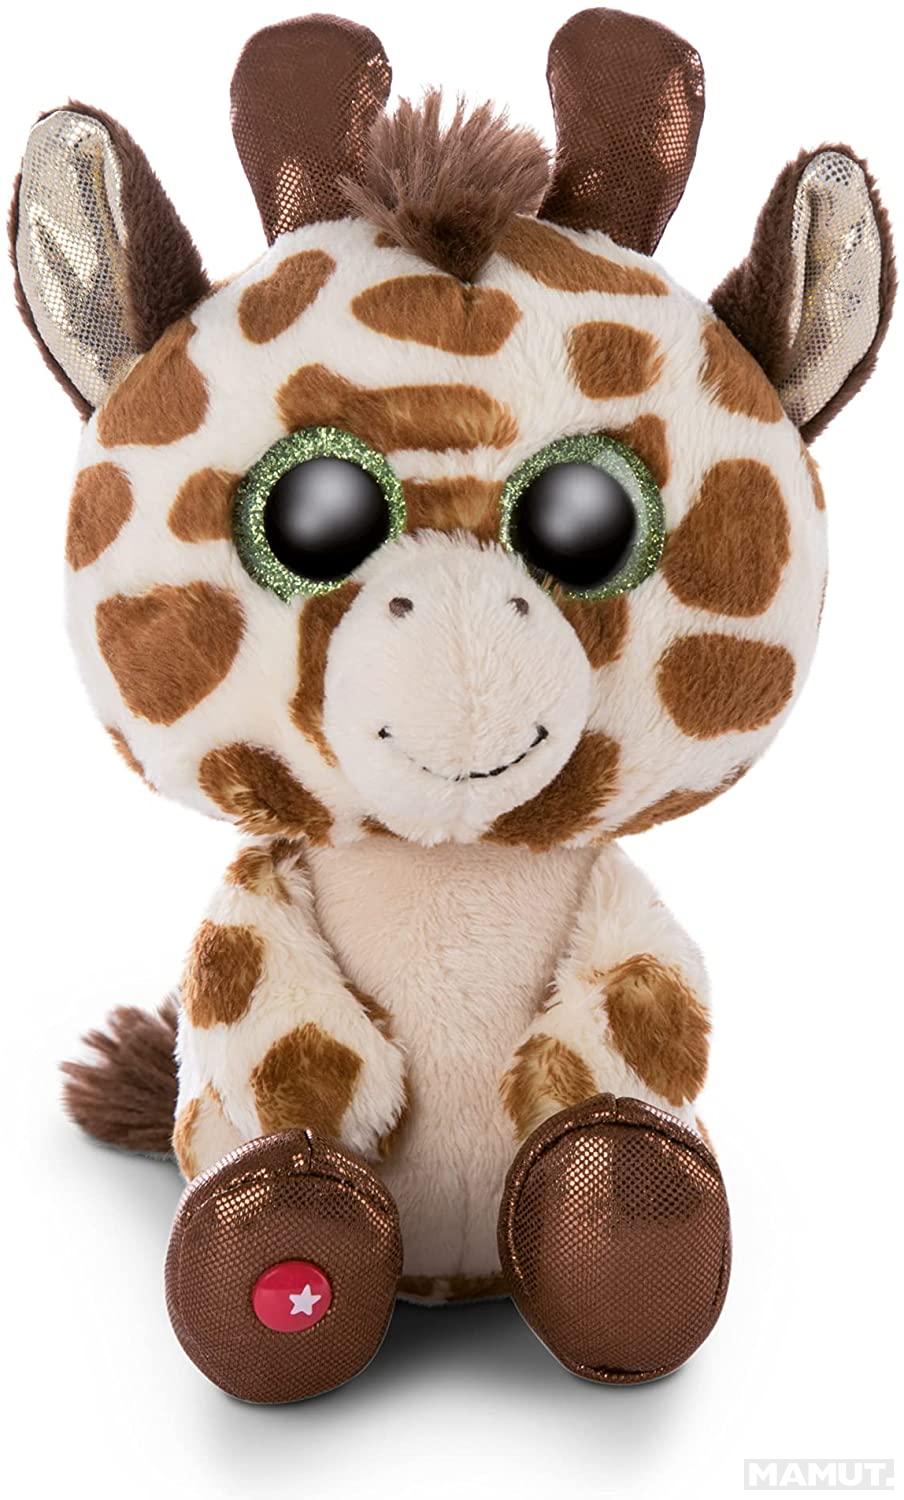 Plišana igračka GLUBSCHIS Giraffe Halla 15 cm 